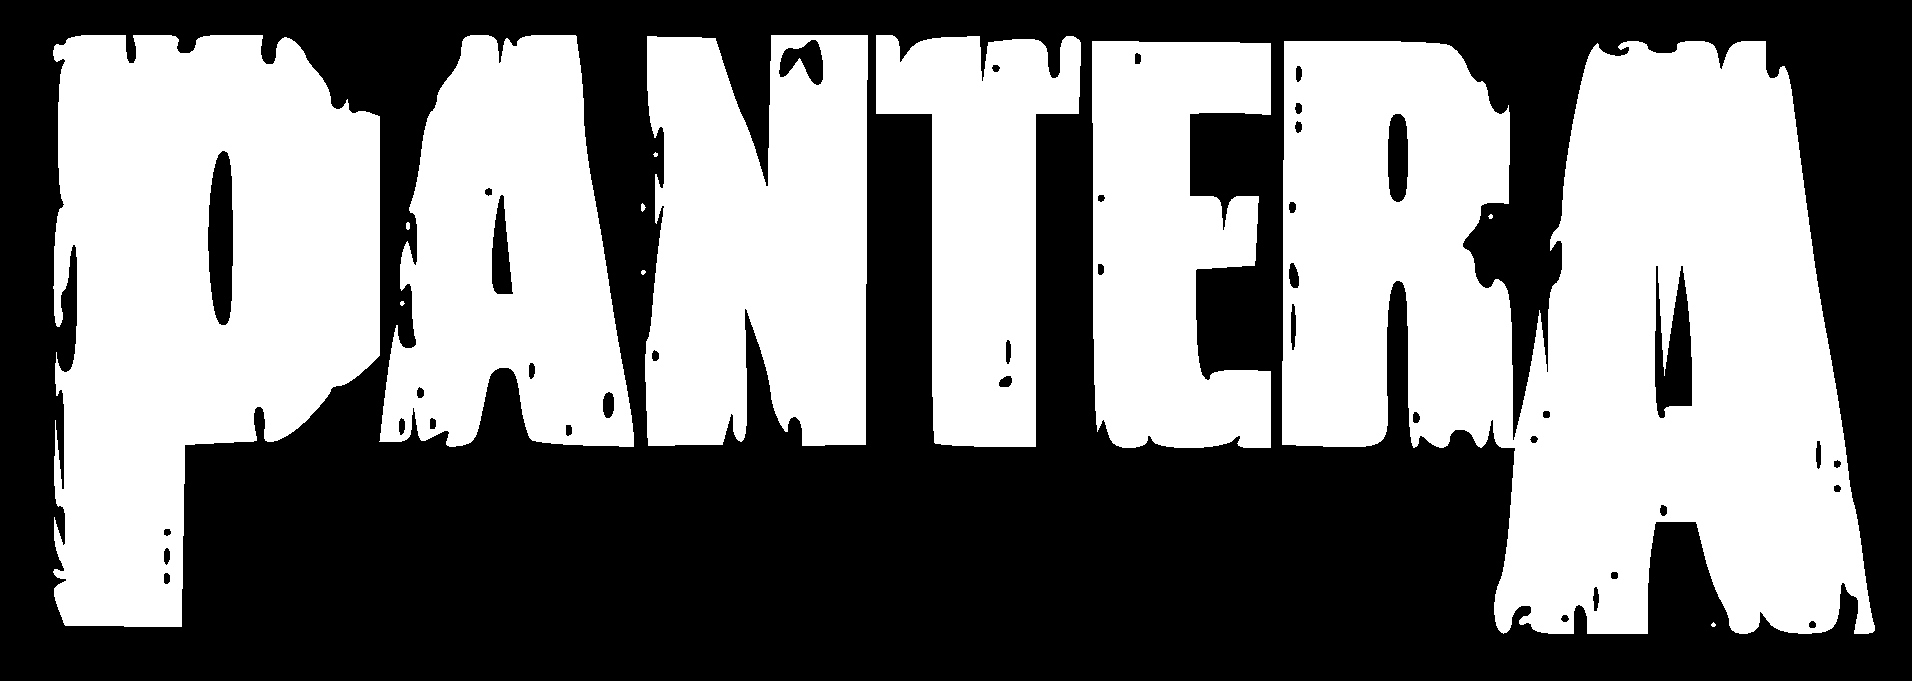 Pantera Logo